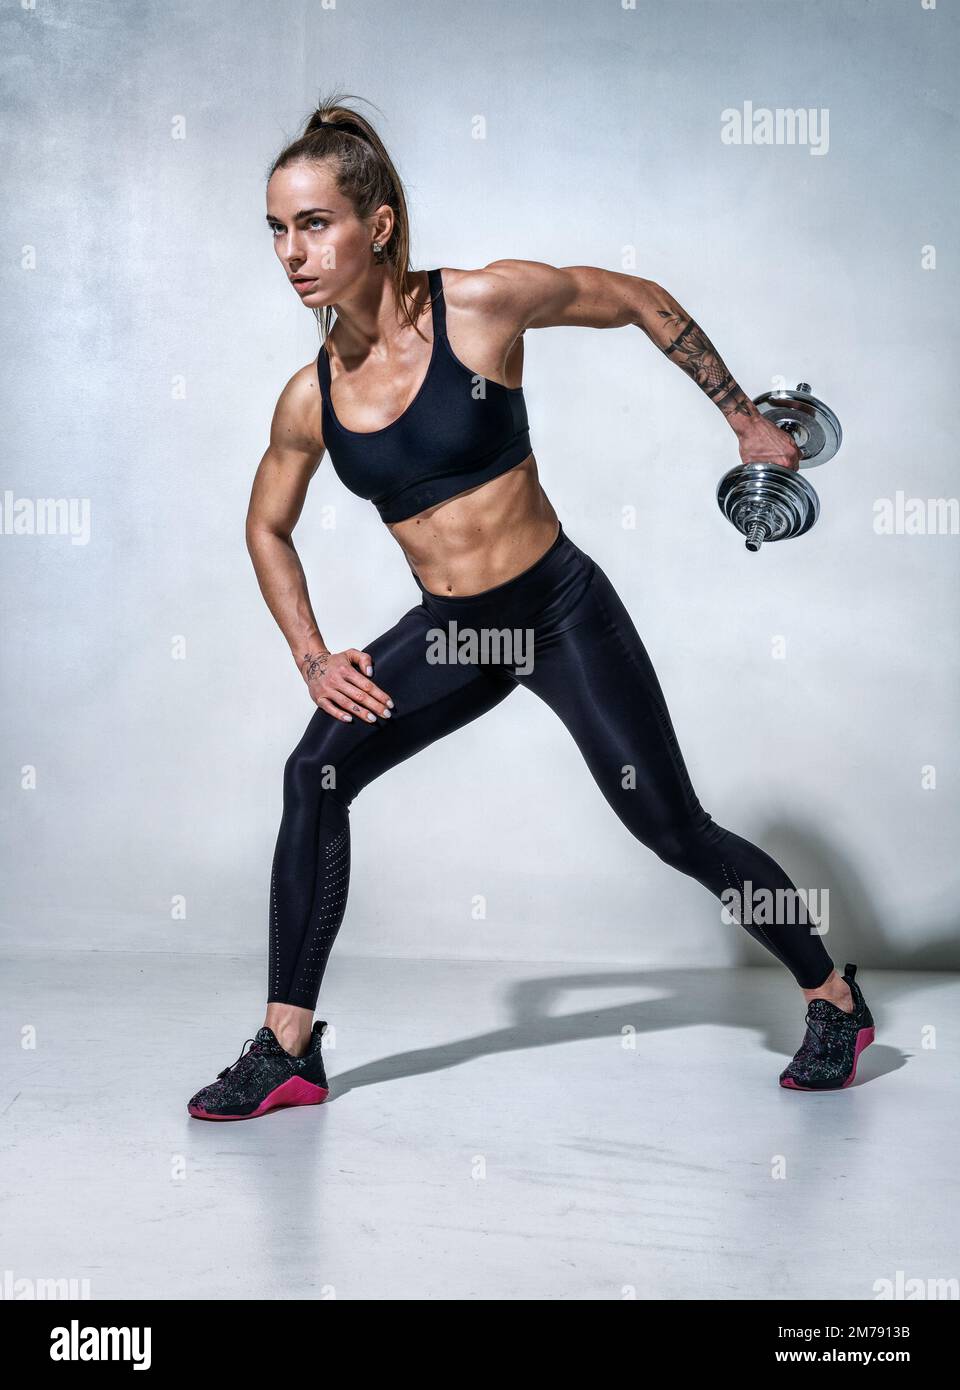 Sportliche Frau, die mit Kurzhanteln trainiert. Foto des Modells in schwarzer Sportbekleidung auf grauem Hintergrund. Sportliche Motivation und gesunder Lebensstil Stockfoto